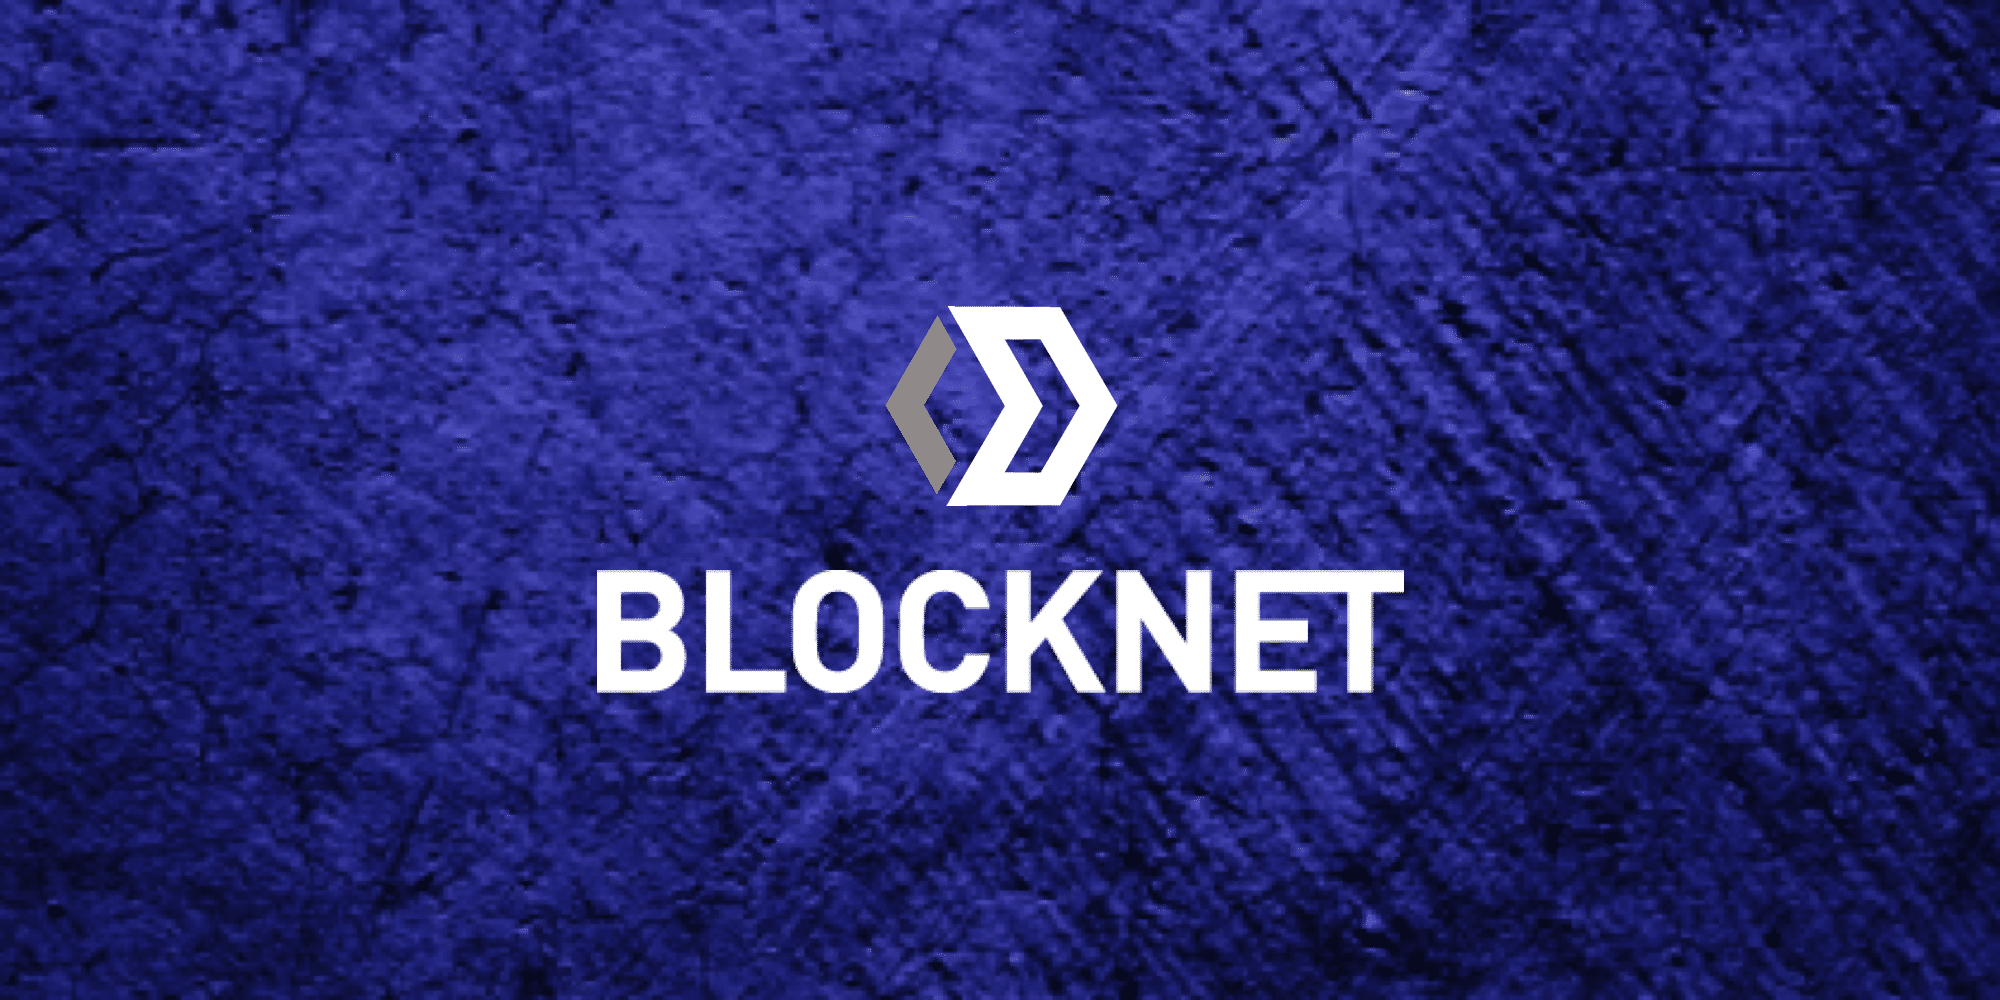 Blocknet crypto ethereum price usd now